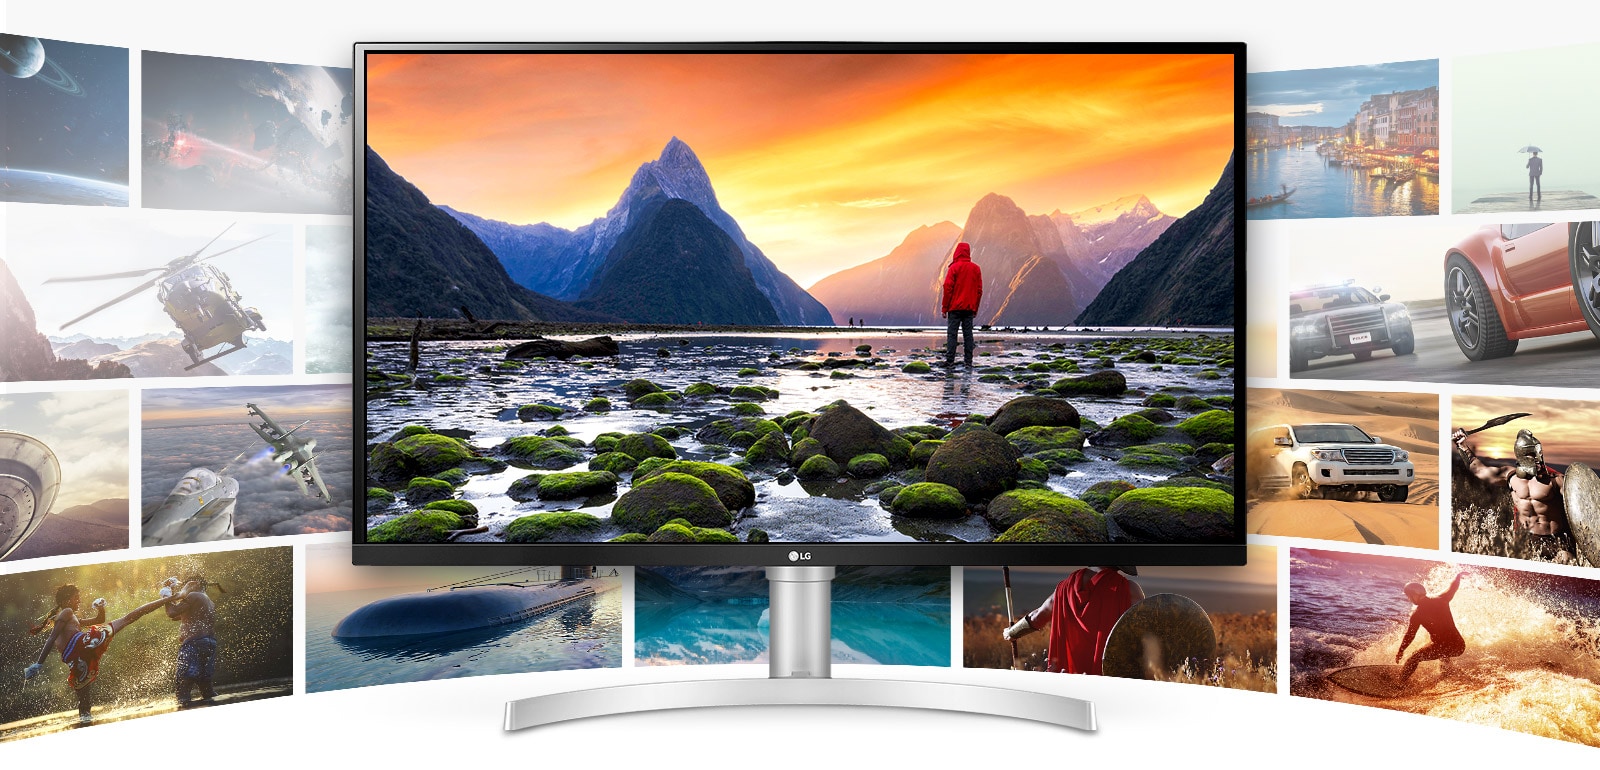 LG UHD 4K ekran pruža izuzetno jasan i detaljan prikaz i performanse za raznovrsne sadržaje